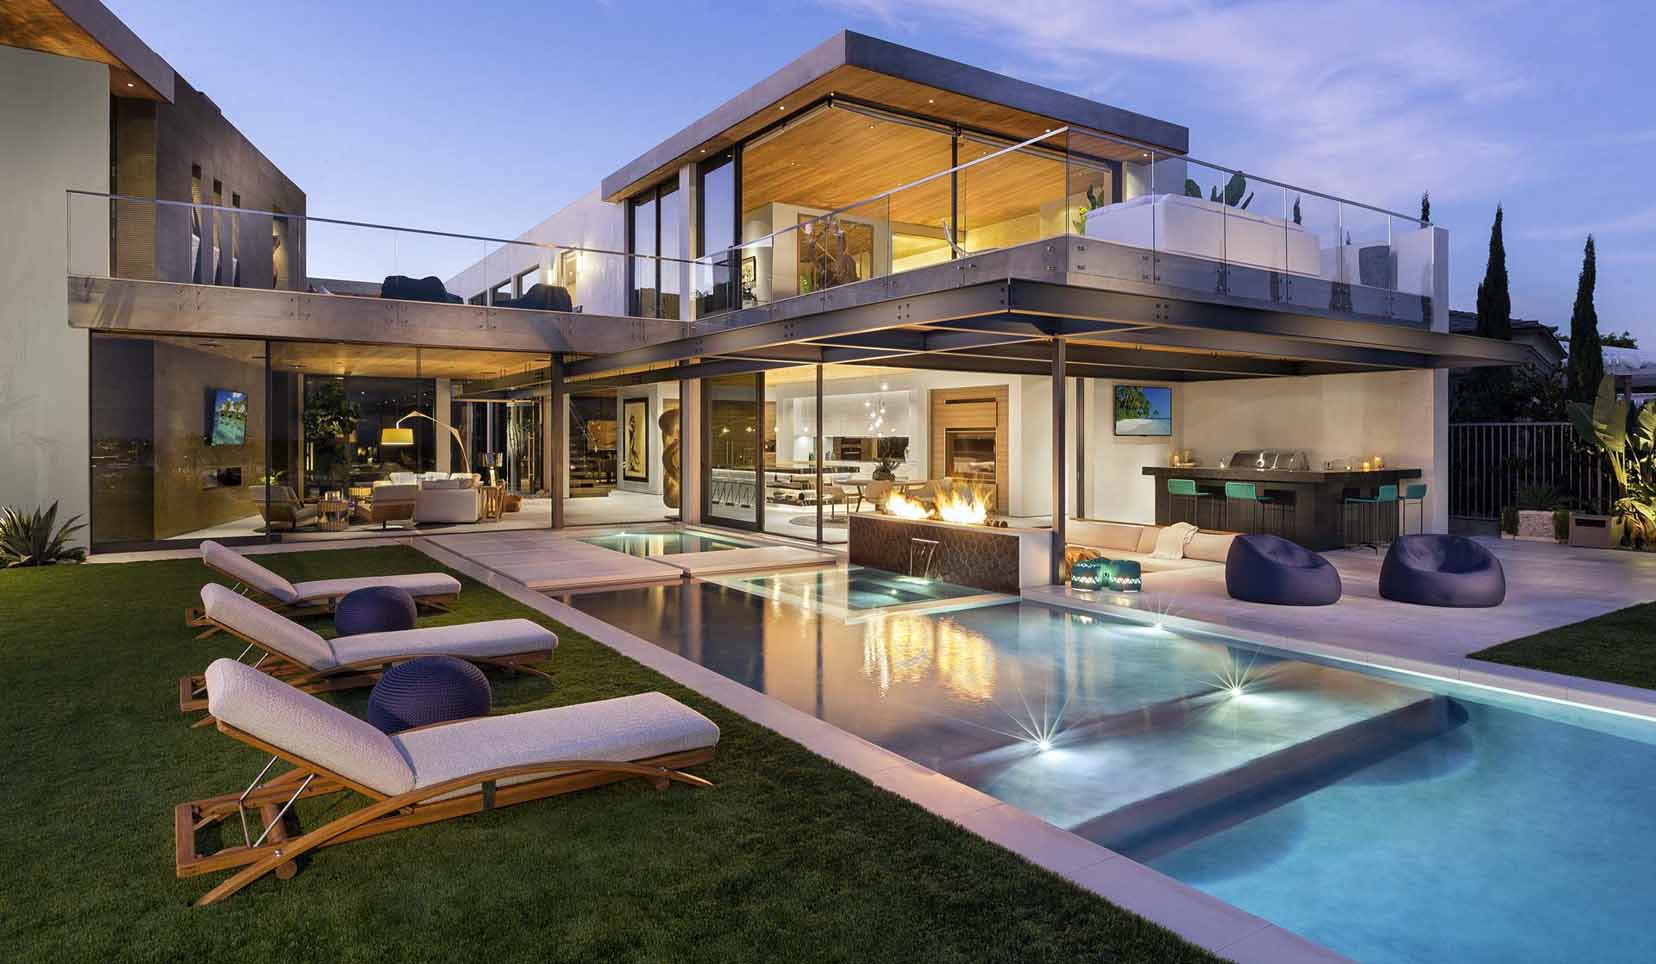 luxury backyard with pool